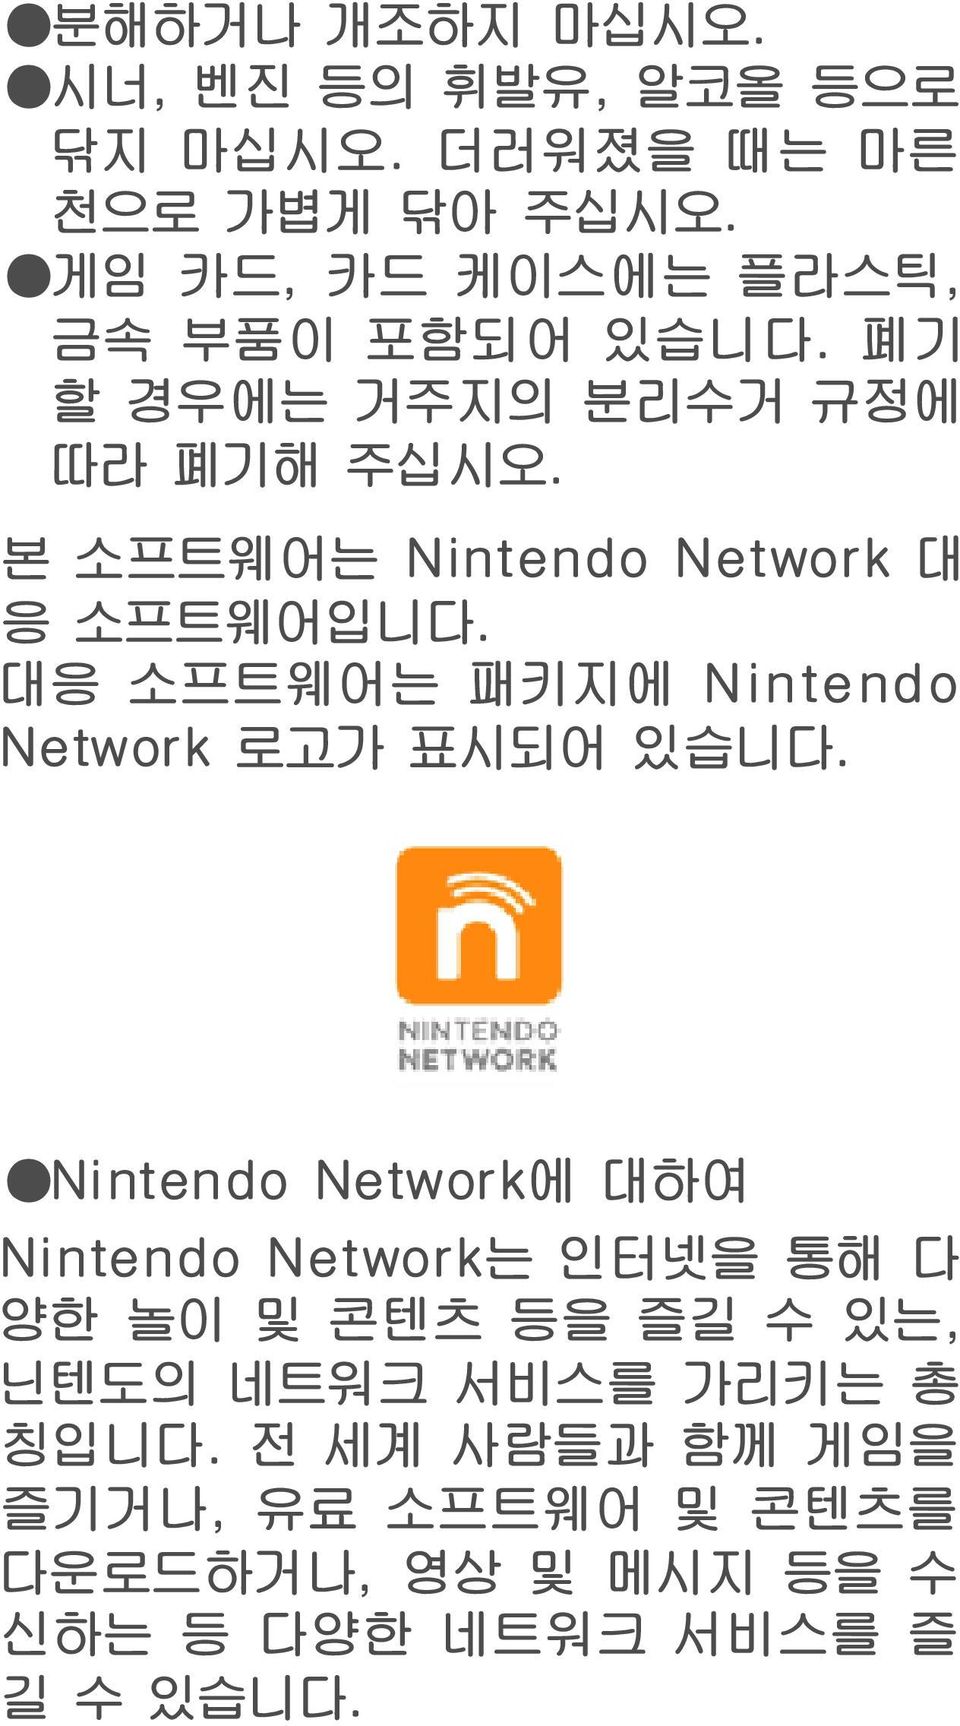 본 소프트웨어는 Nintendo Network 대 응 소프트웨어입니다. 대응 소프트웨어는 패키지에 Nintendo Network 로고가 표시되어 있습니다.